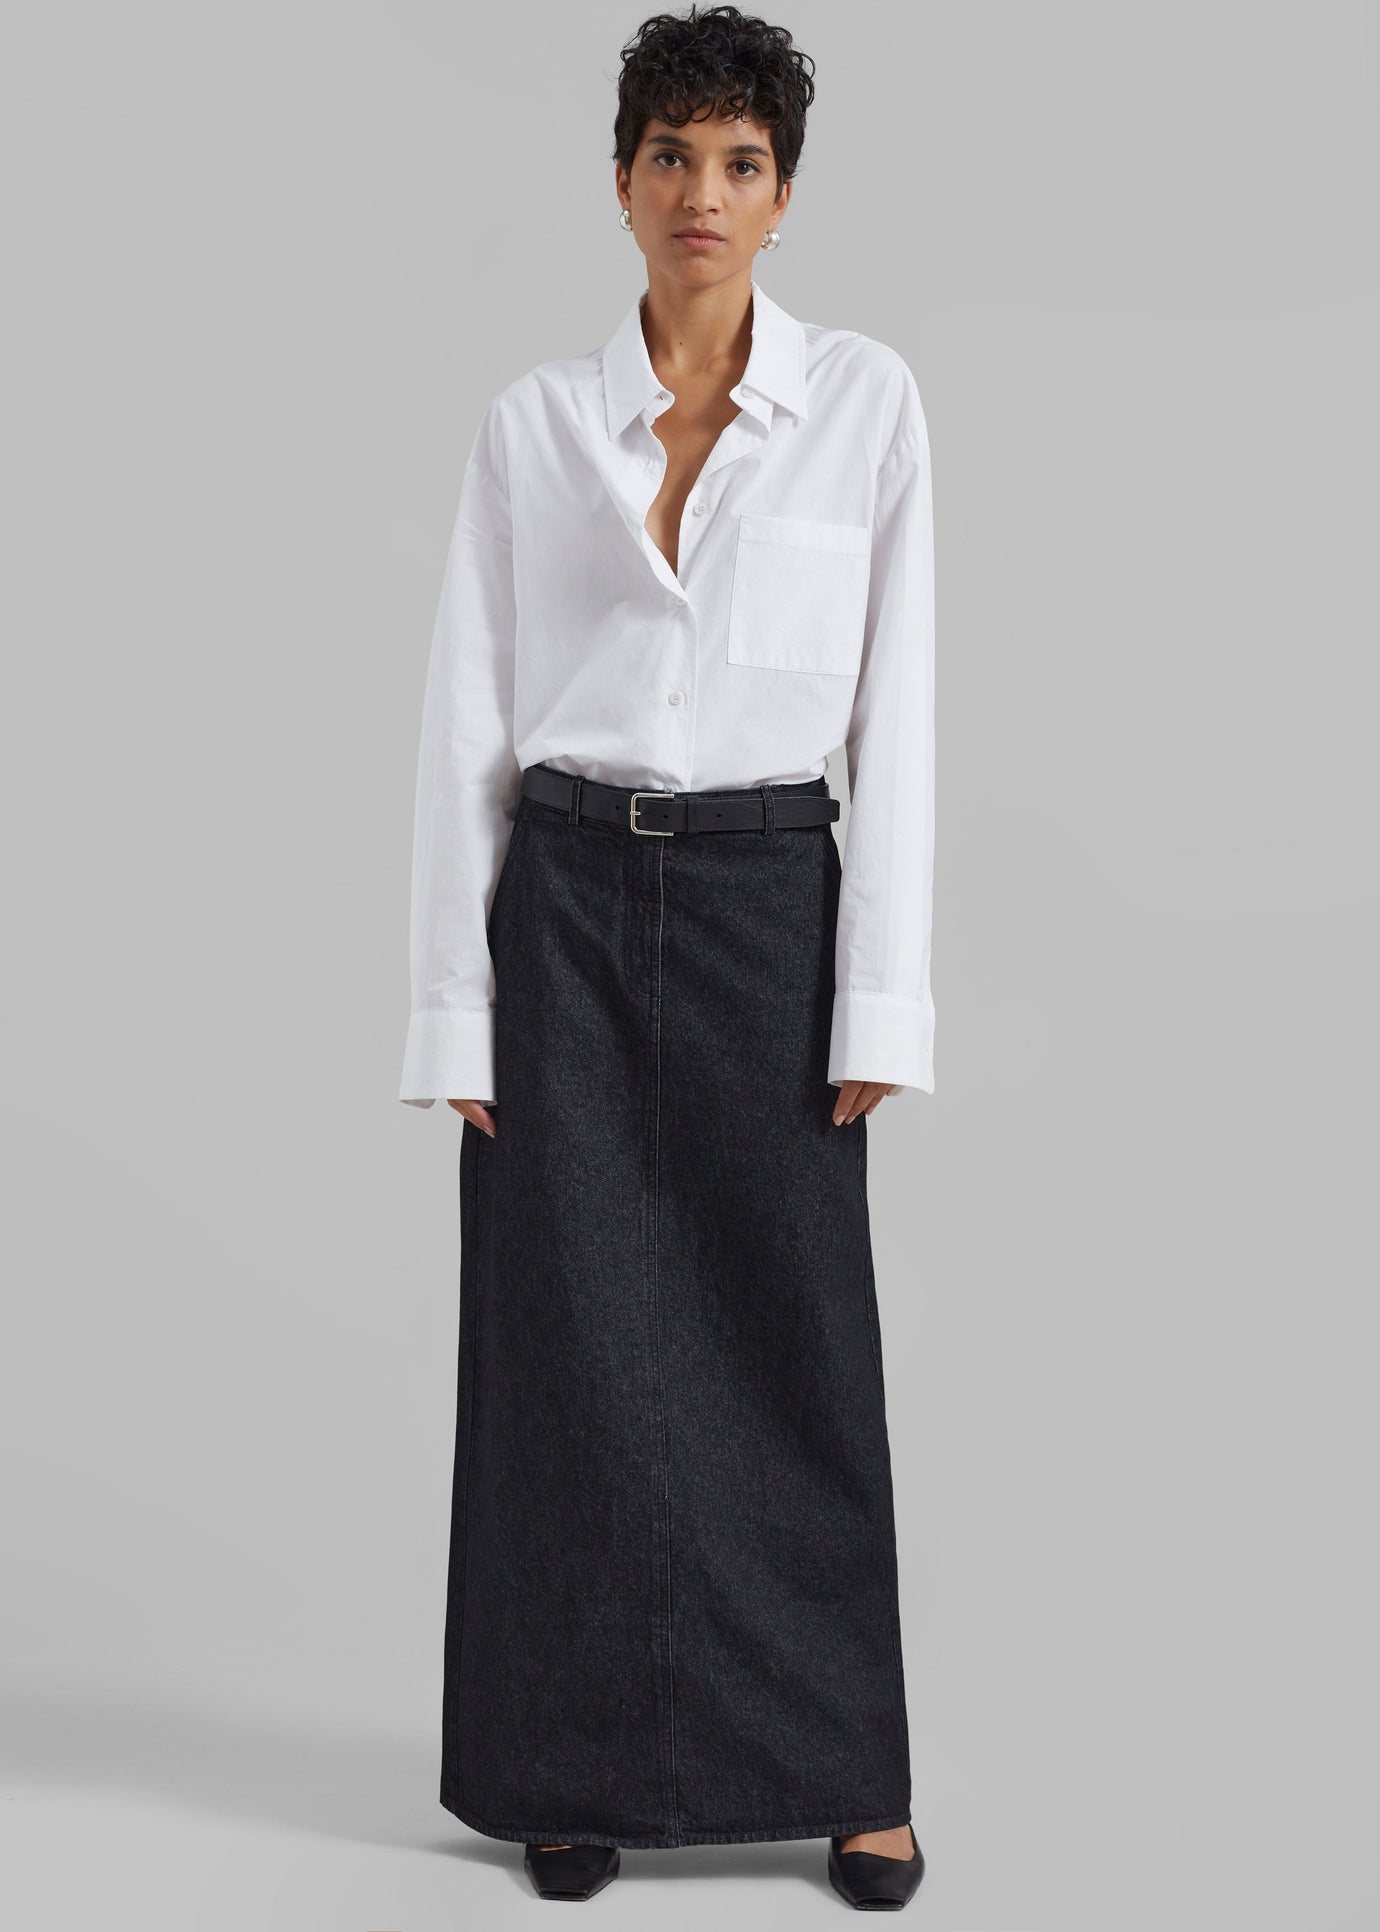 The Garment Eclipse Skirt - Dark Grey Melange